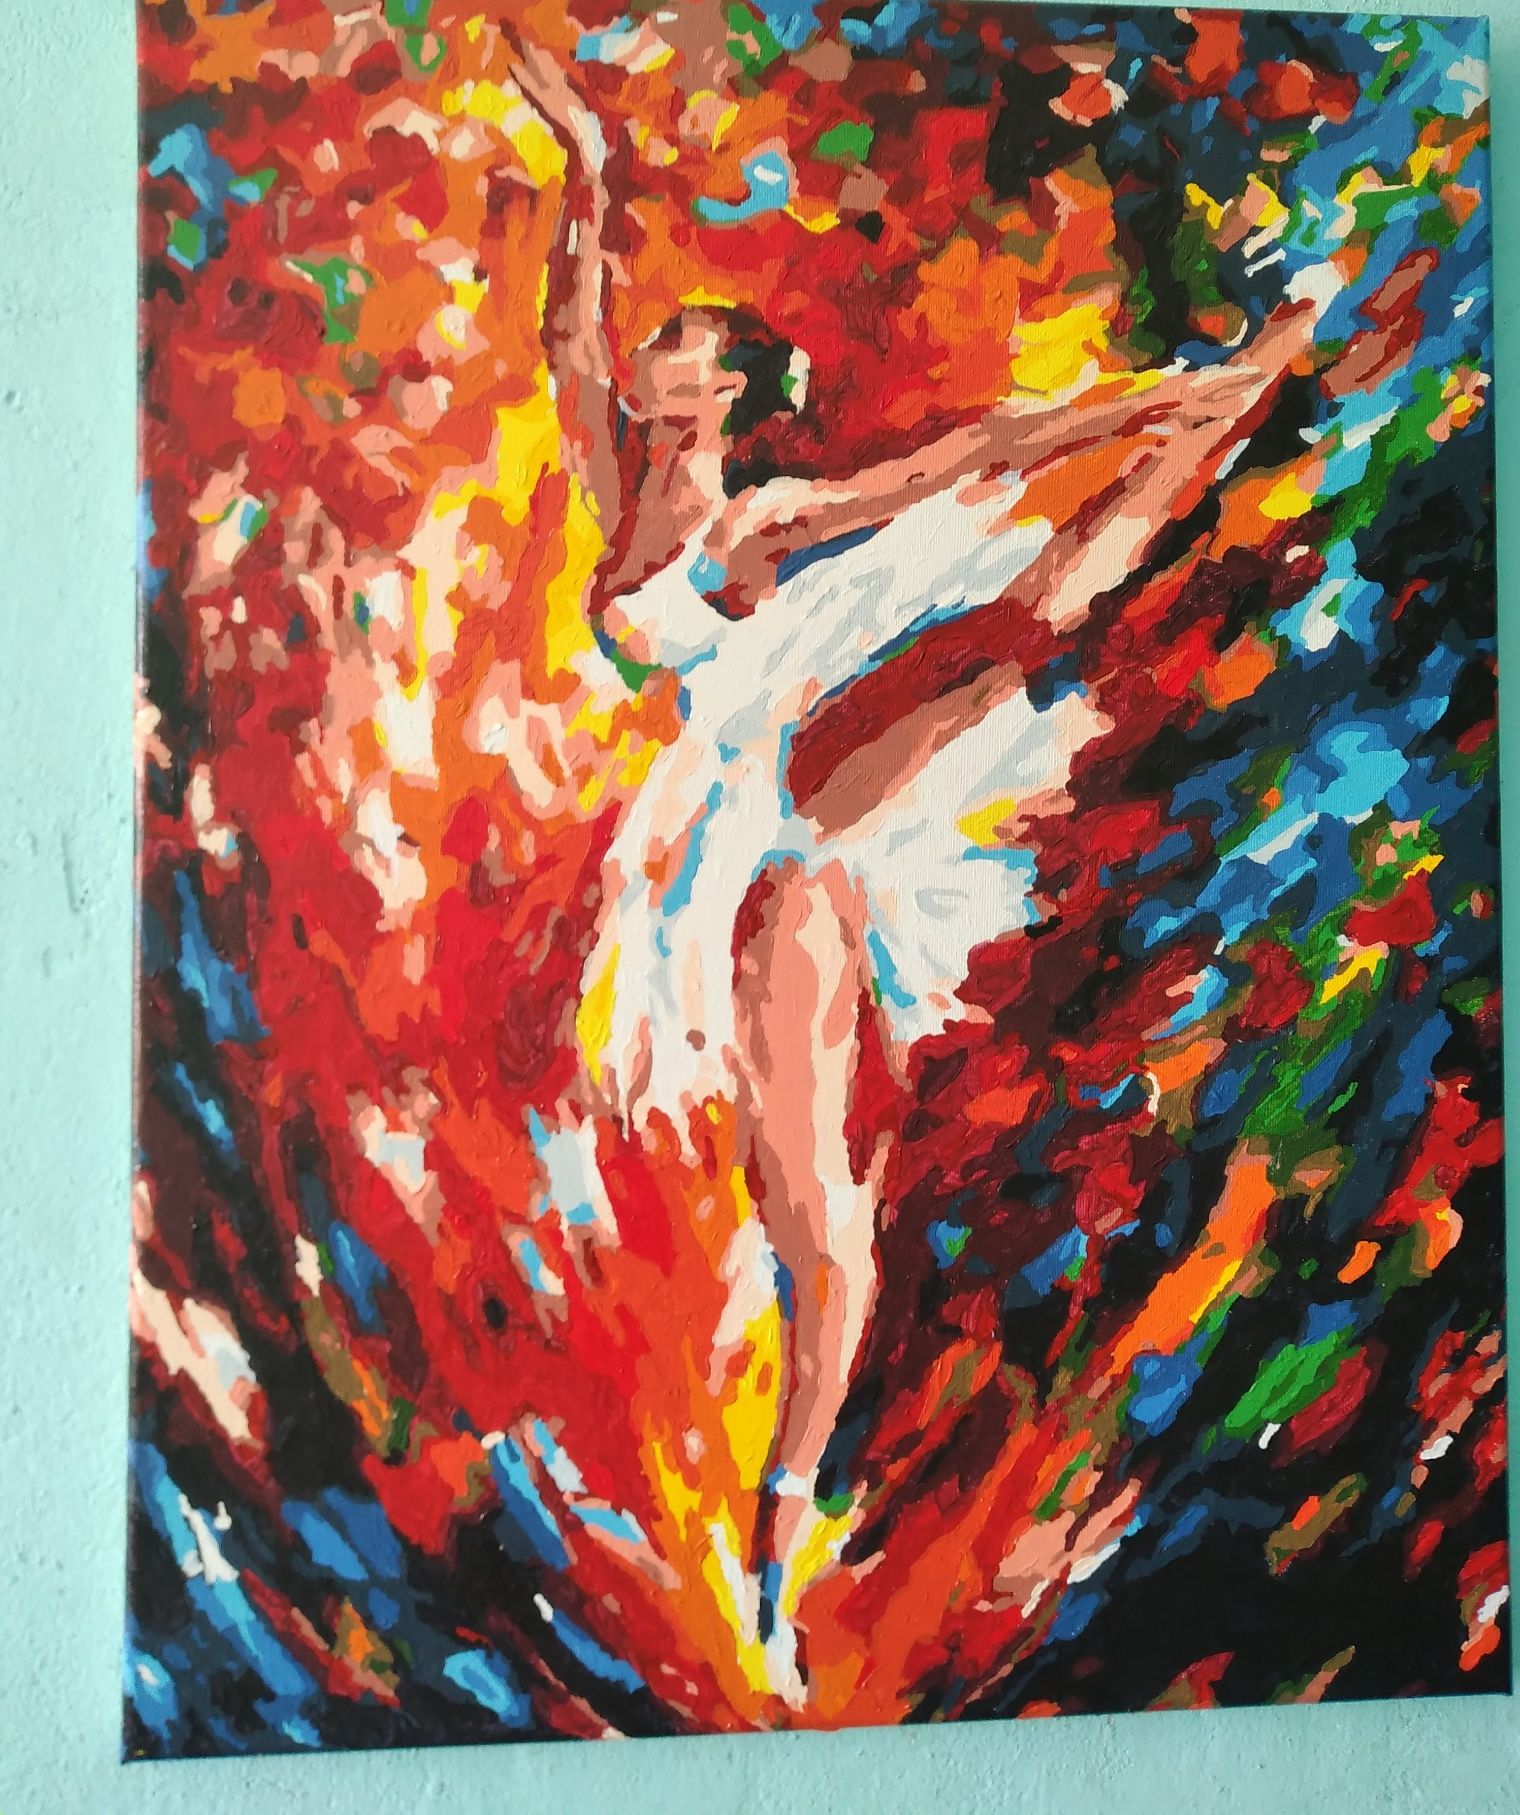 Картина 40×50 см. "Балерина" - яркая абстракция